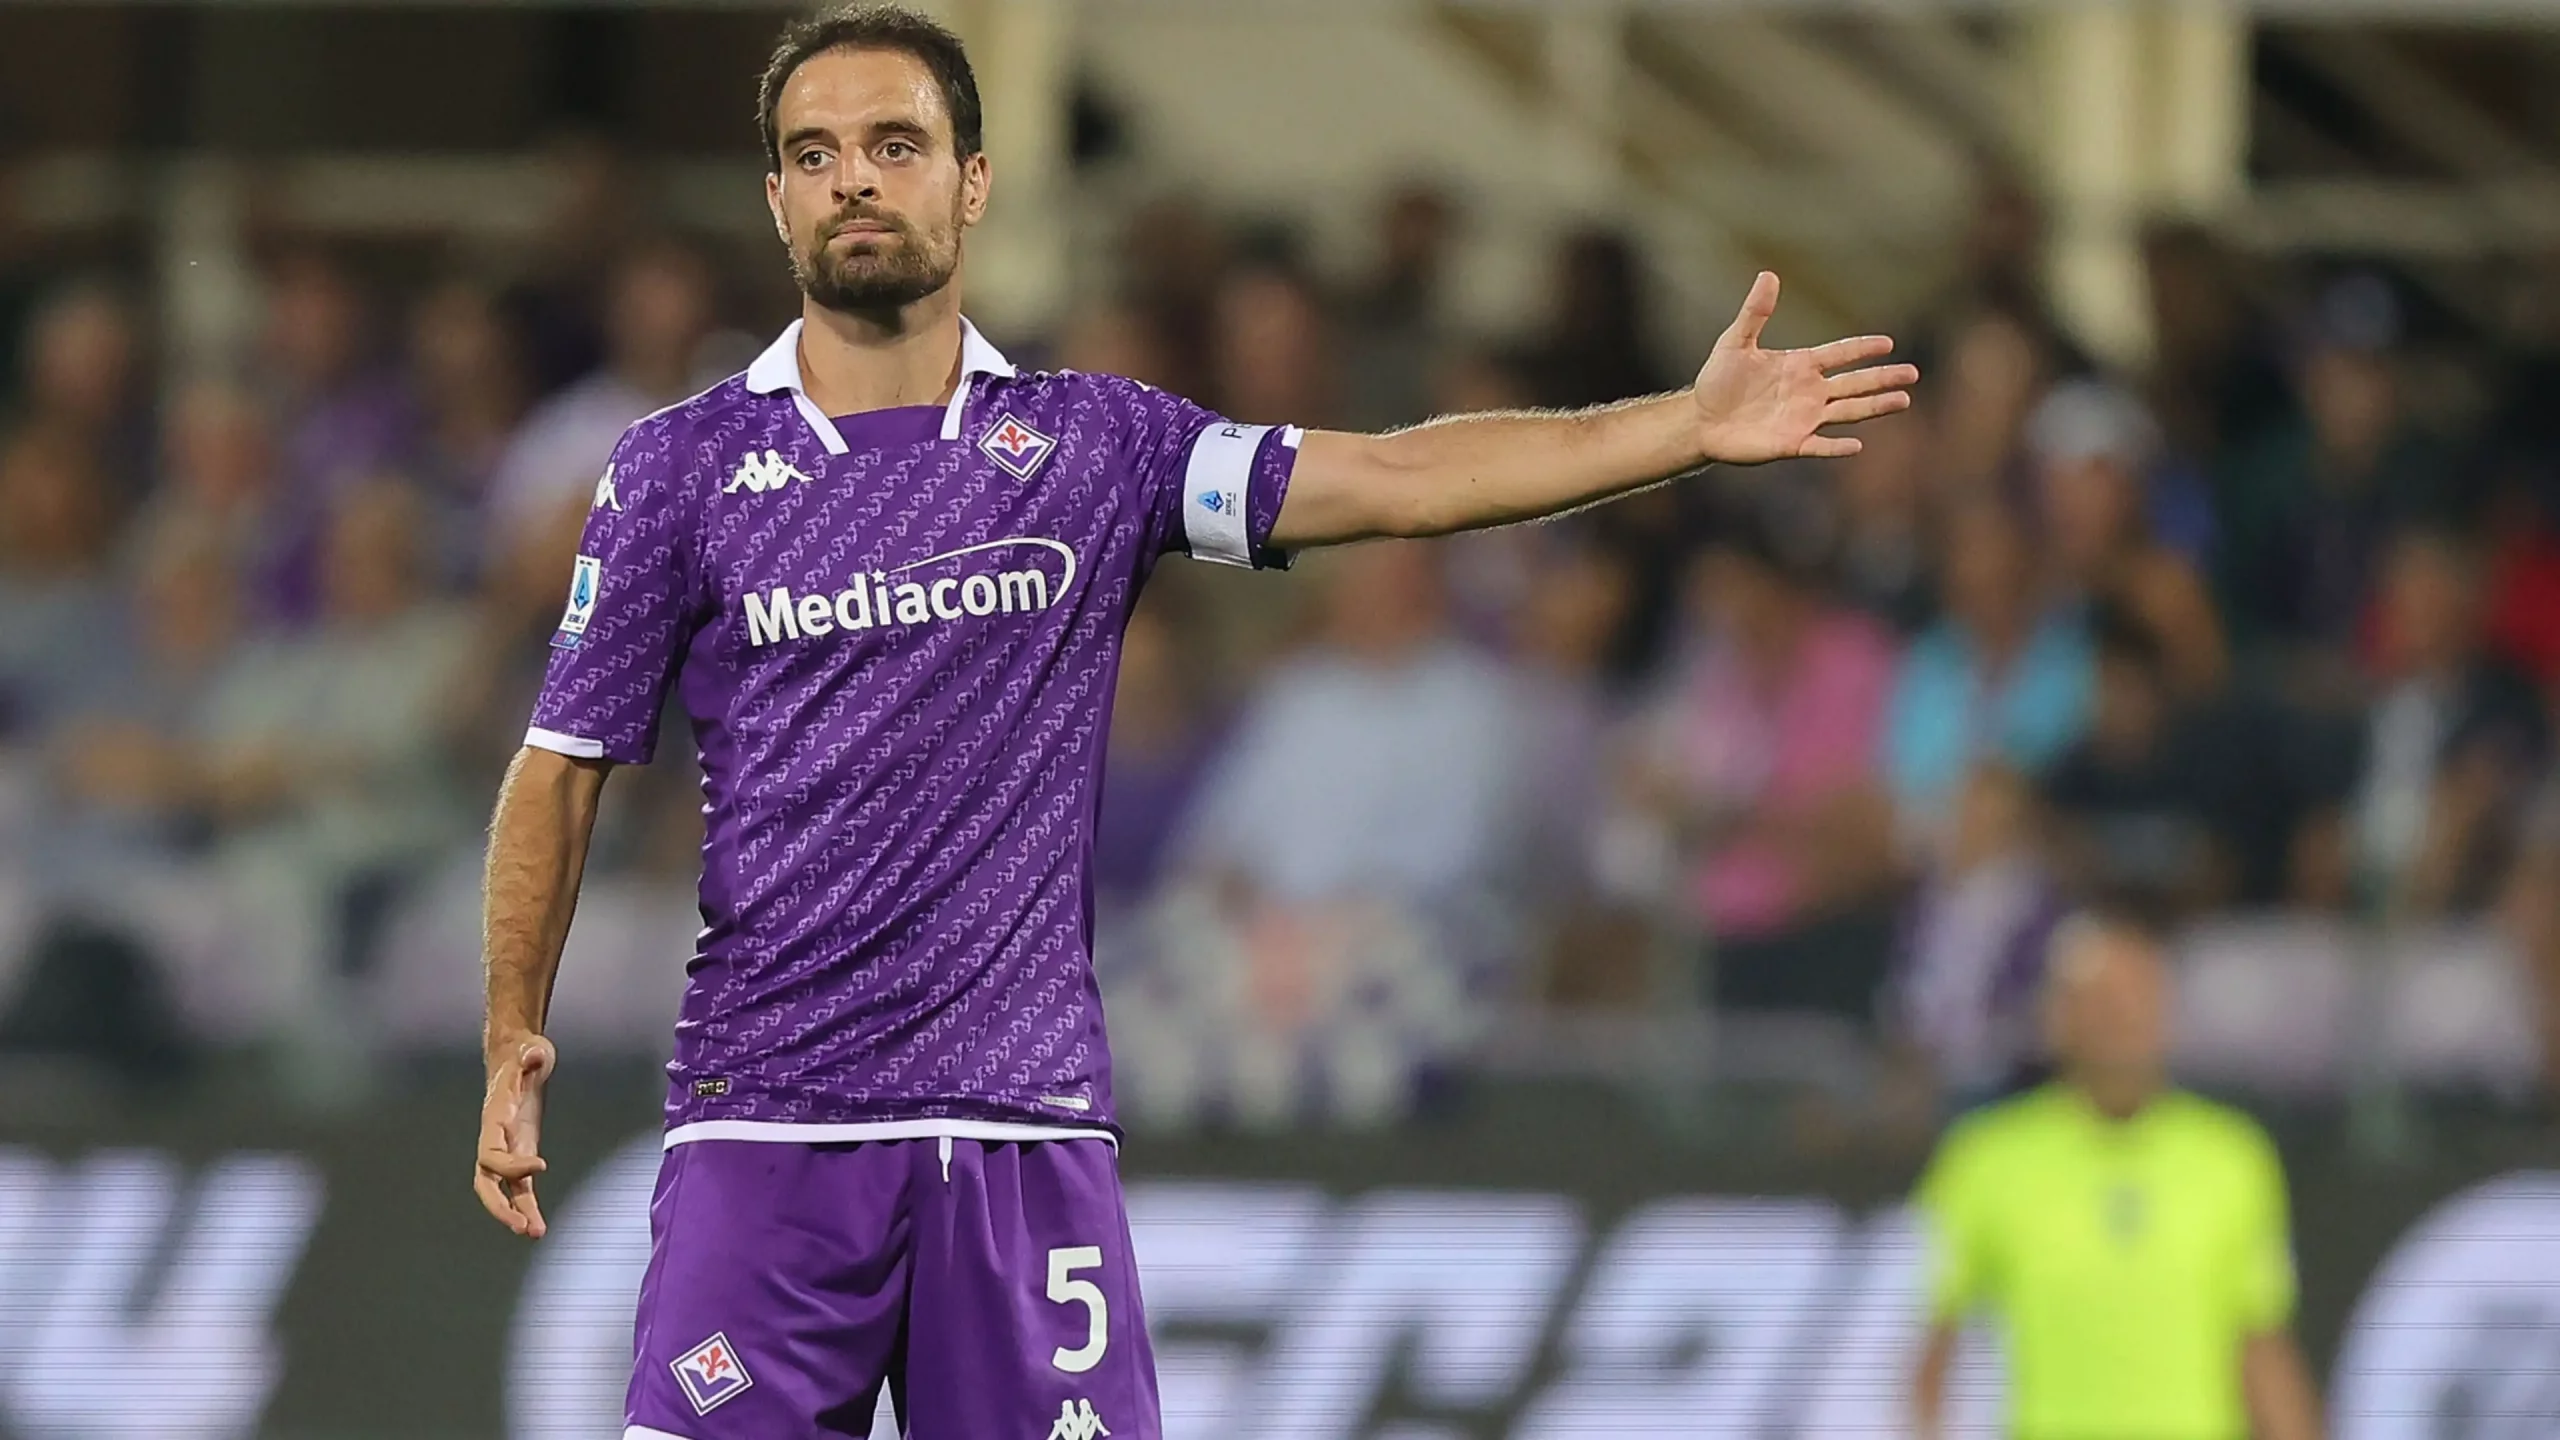 Fiorentina, Bonaventura preoccupa: le sensazioni in vista dell'Atalanta